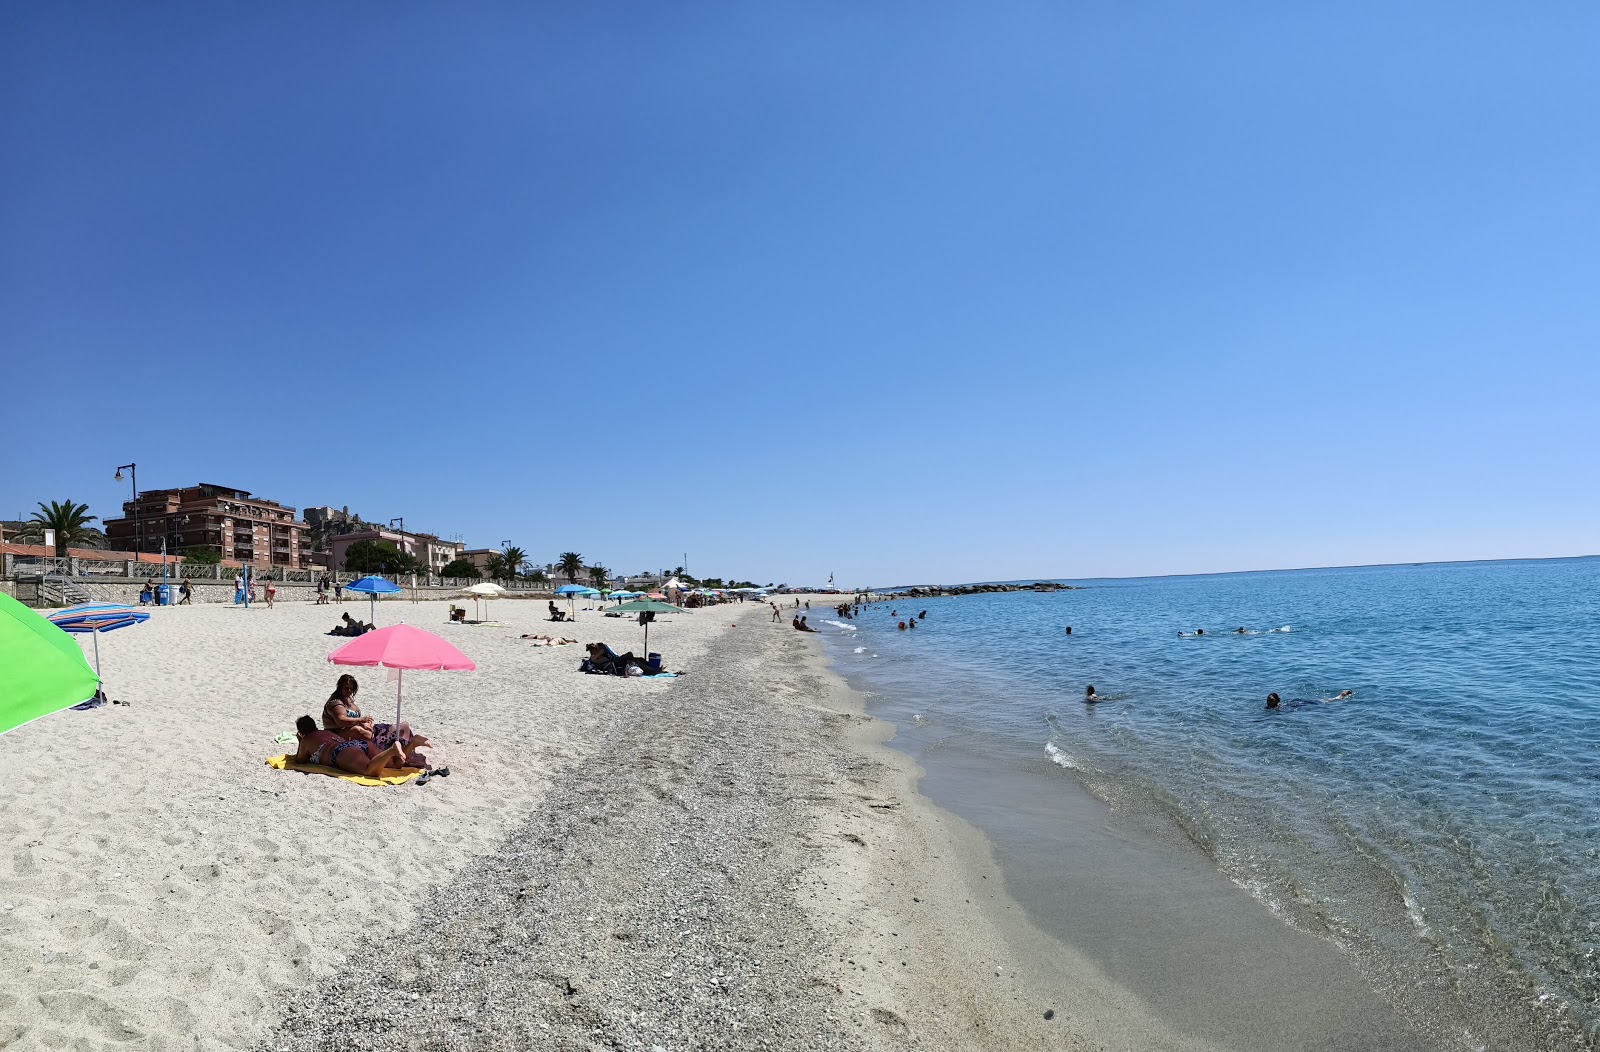 Rocella Jonica beach'in fotoğrafı gri kum yüzey ile